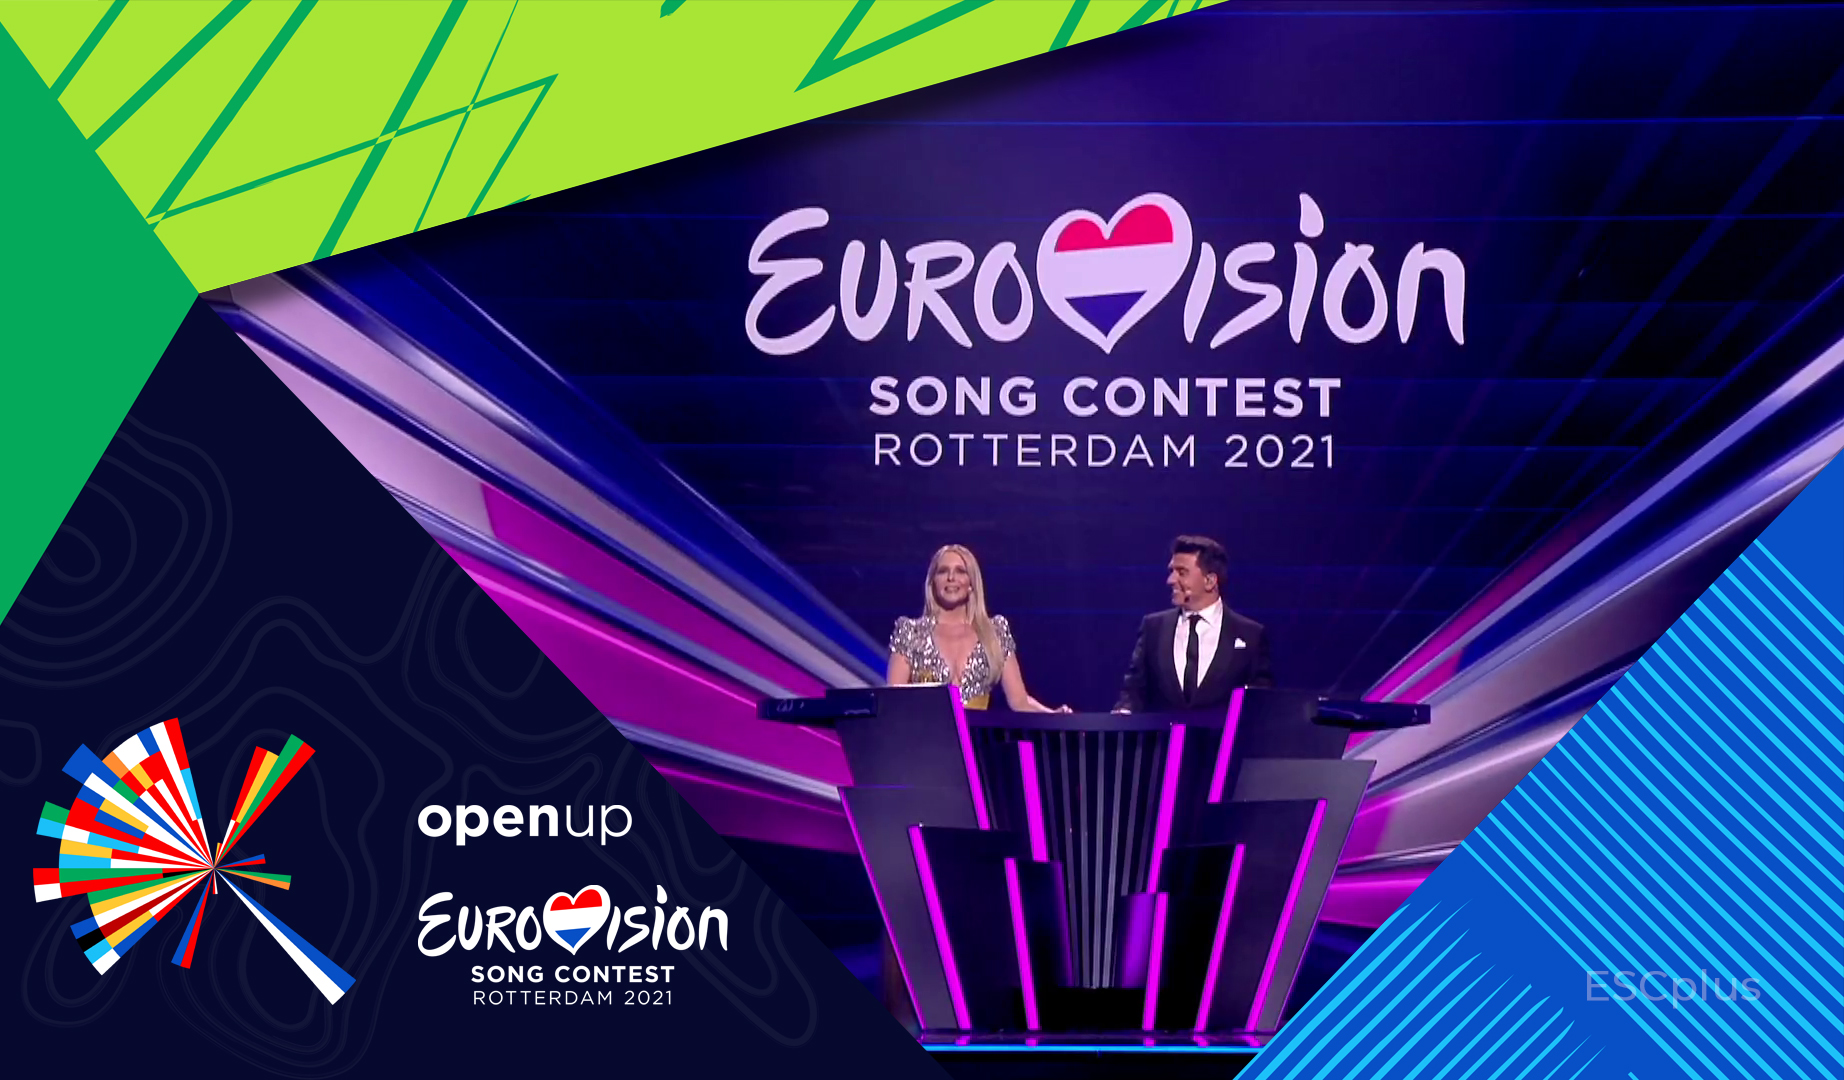 Eurovisión 2021 – Segunda Semifinal: ¡Éstos son los 10 países clasificados para la Gran Final!